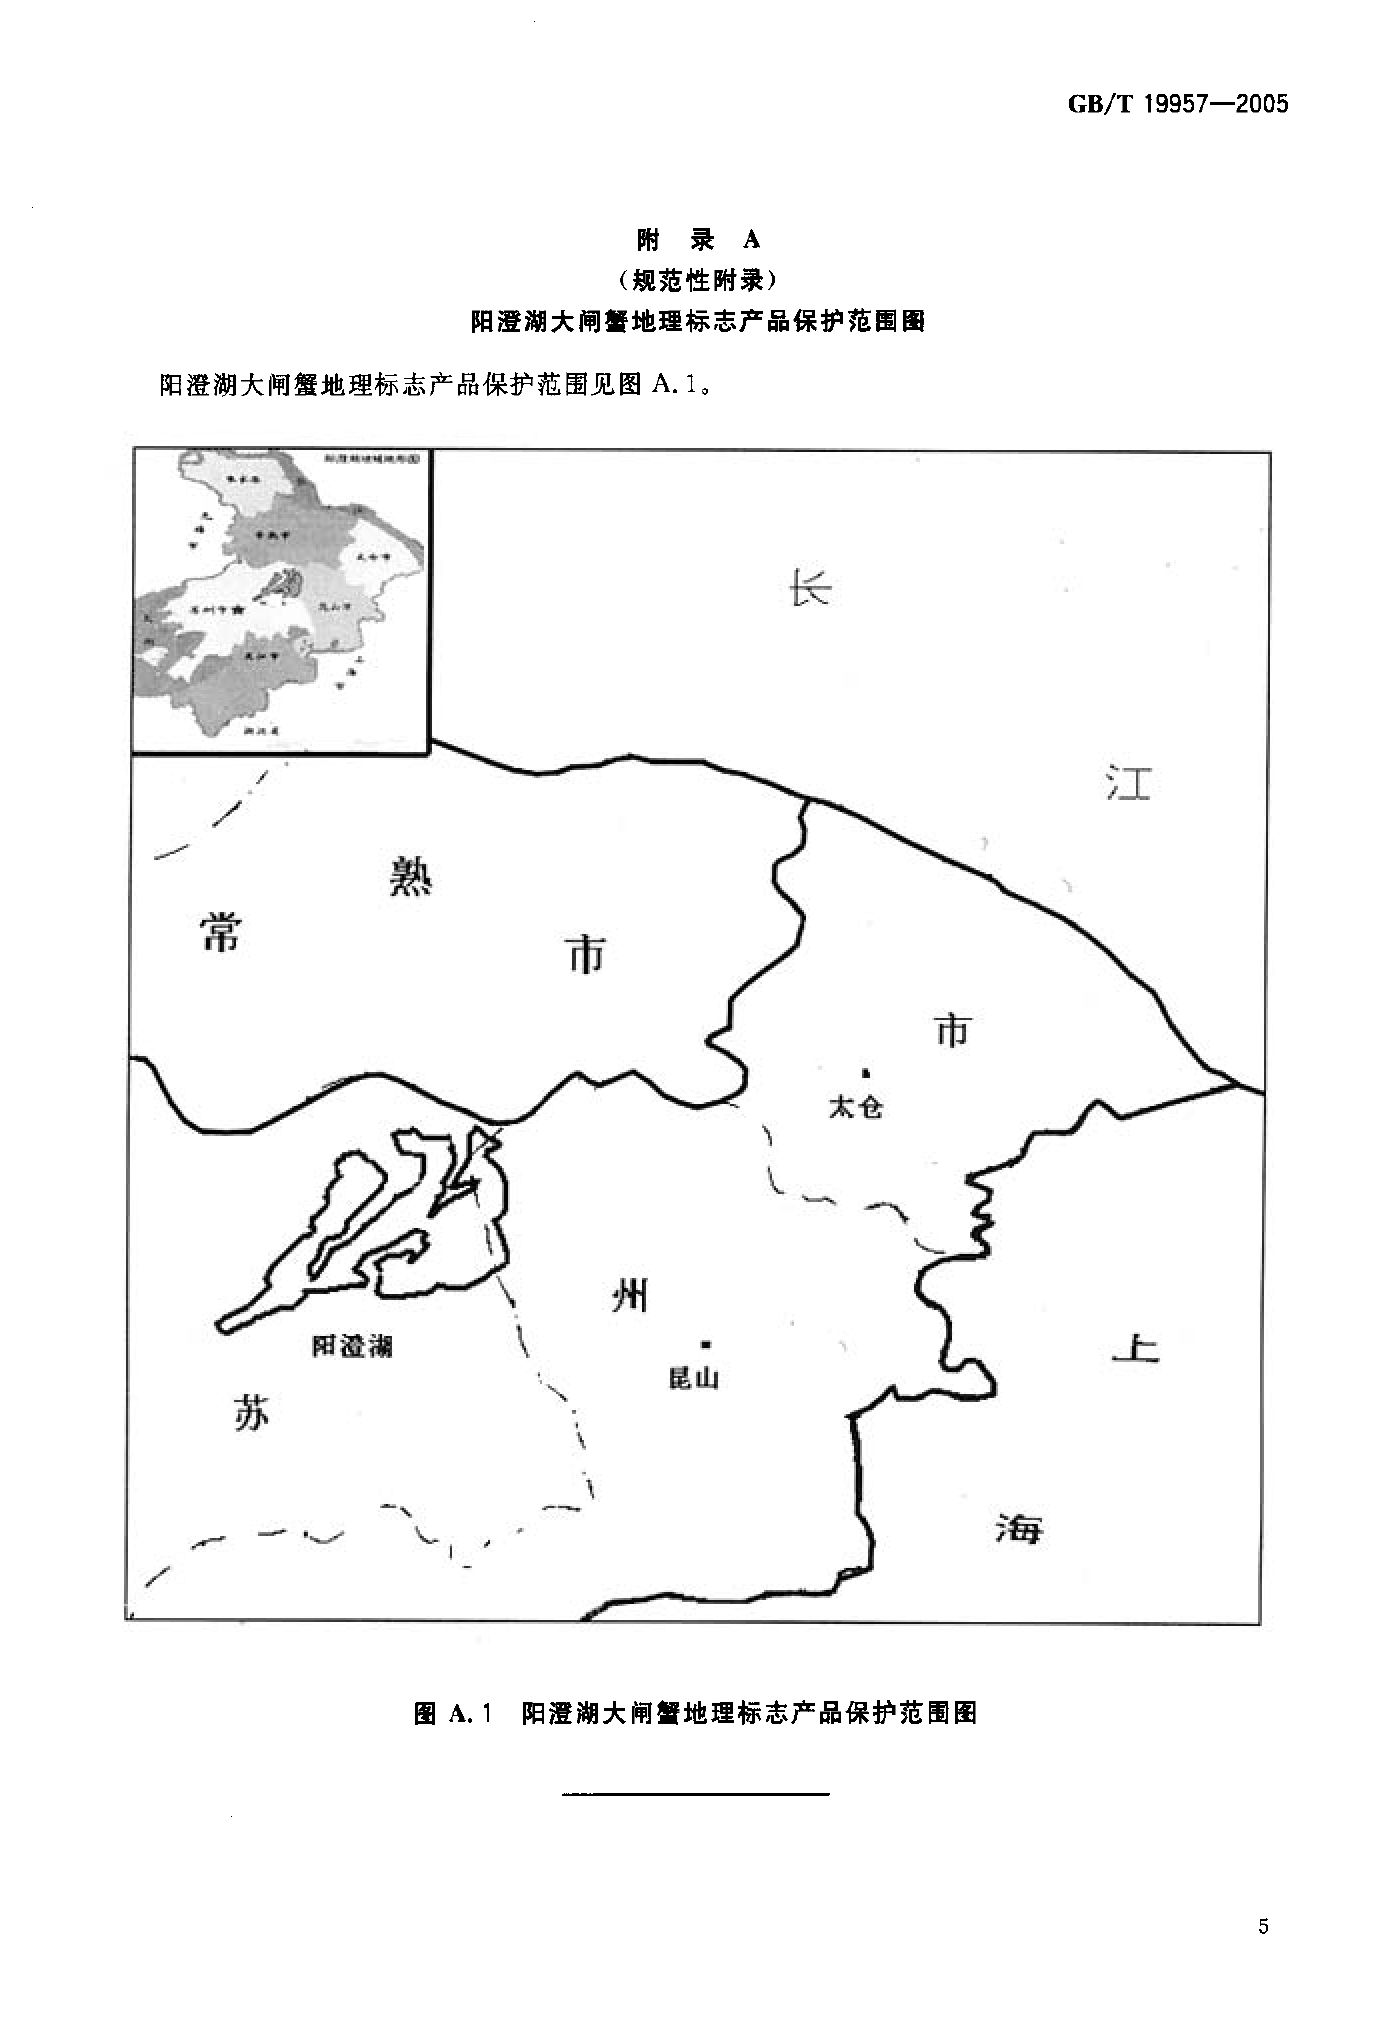 陽澄湖大閘蟹地理標誌產品保護範圍圖